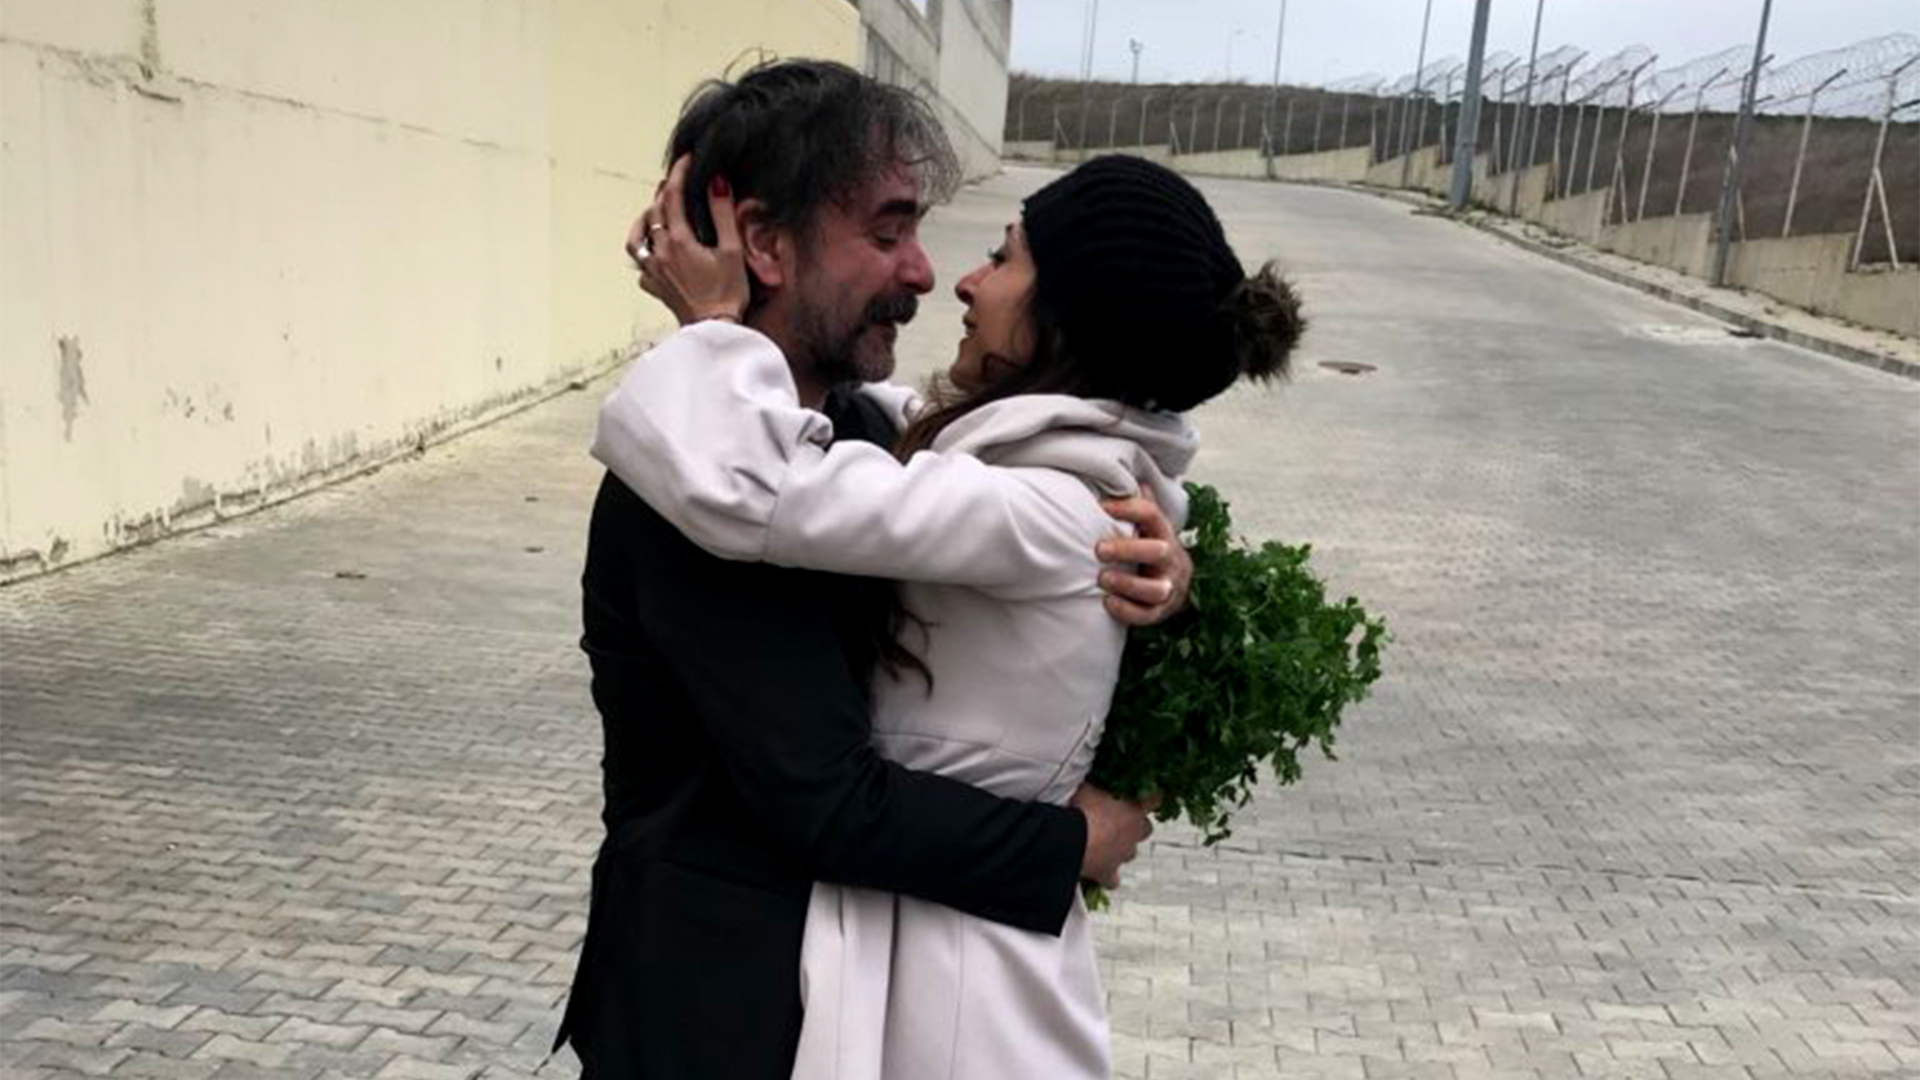 Deniz Yücel umarmt seine Frau. | Veysel Ok